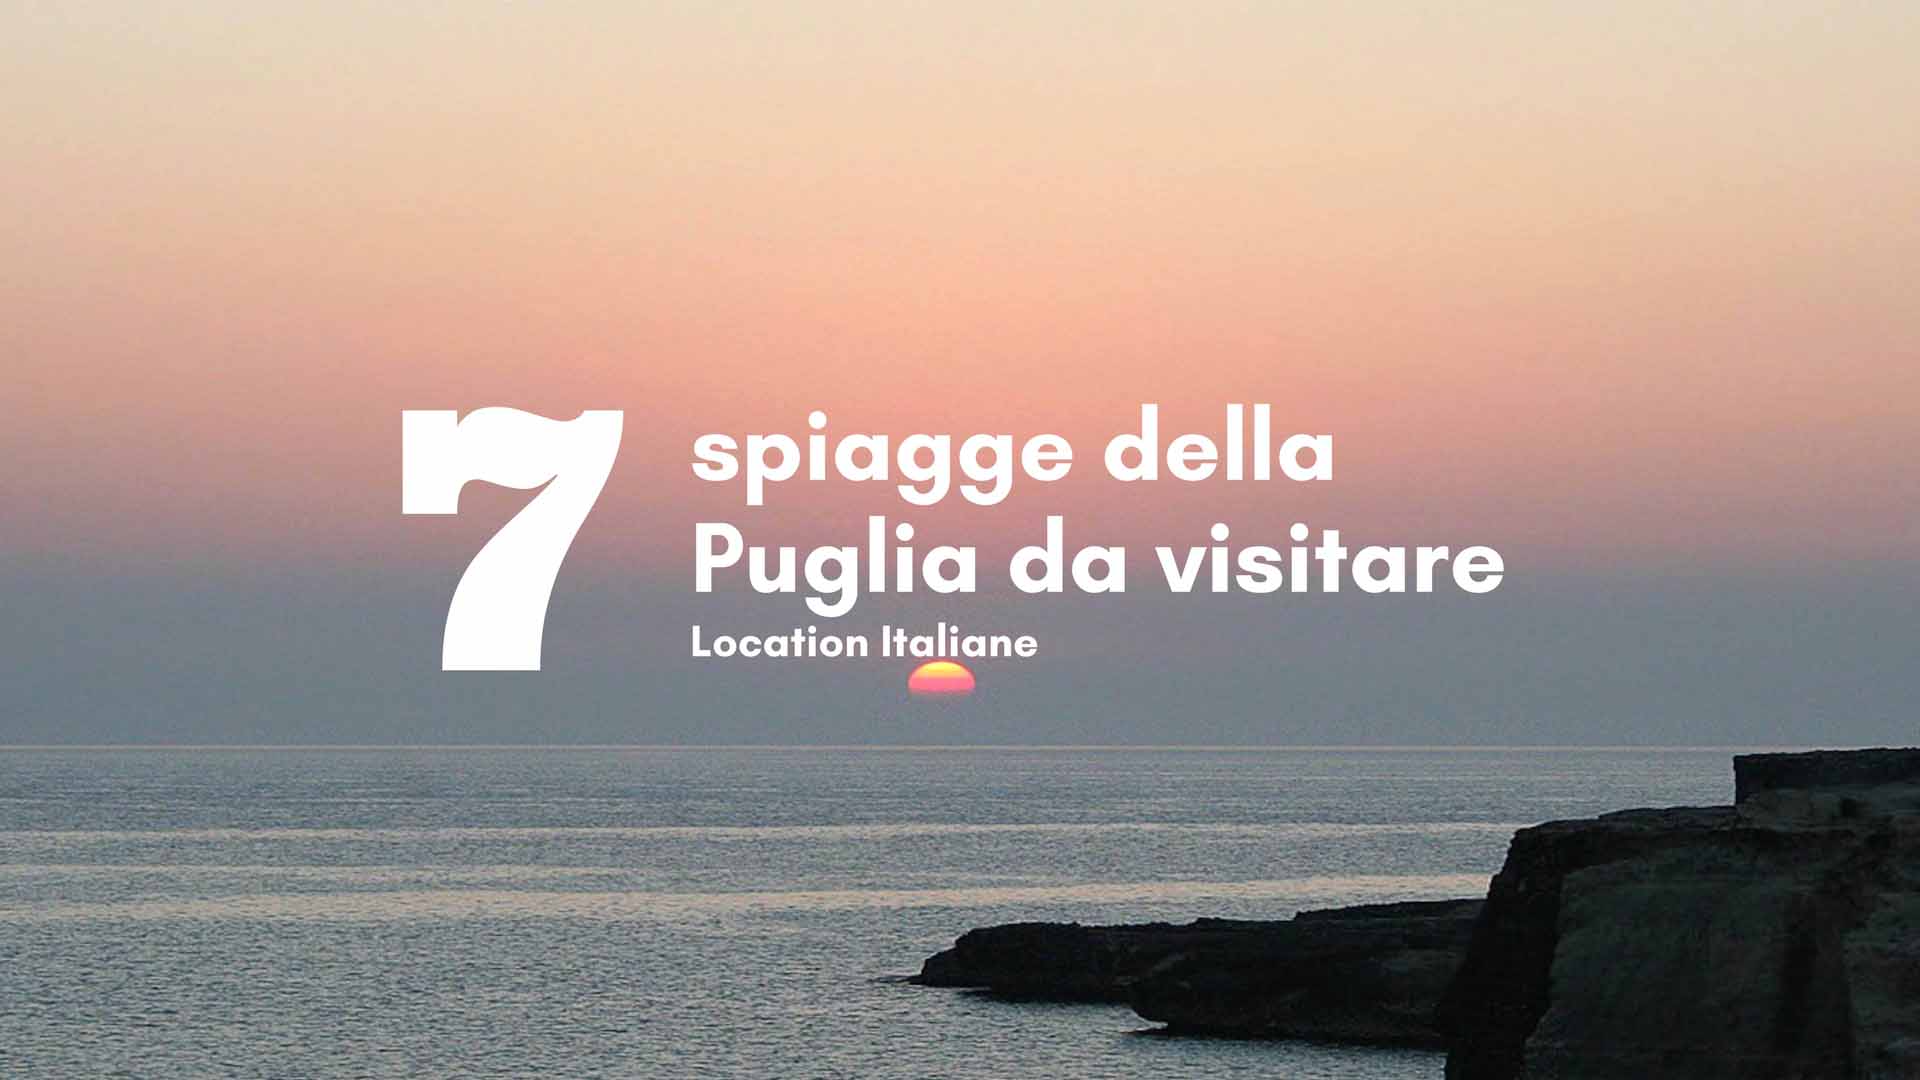 7 spiagge della Puglia da visitare